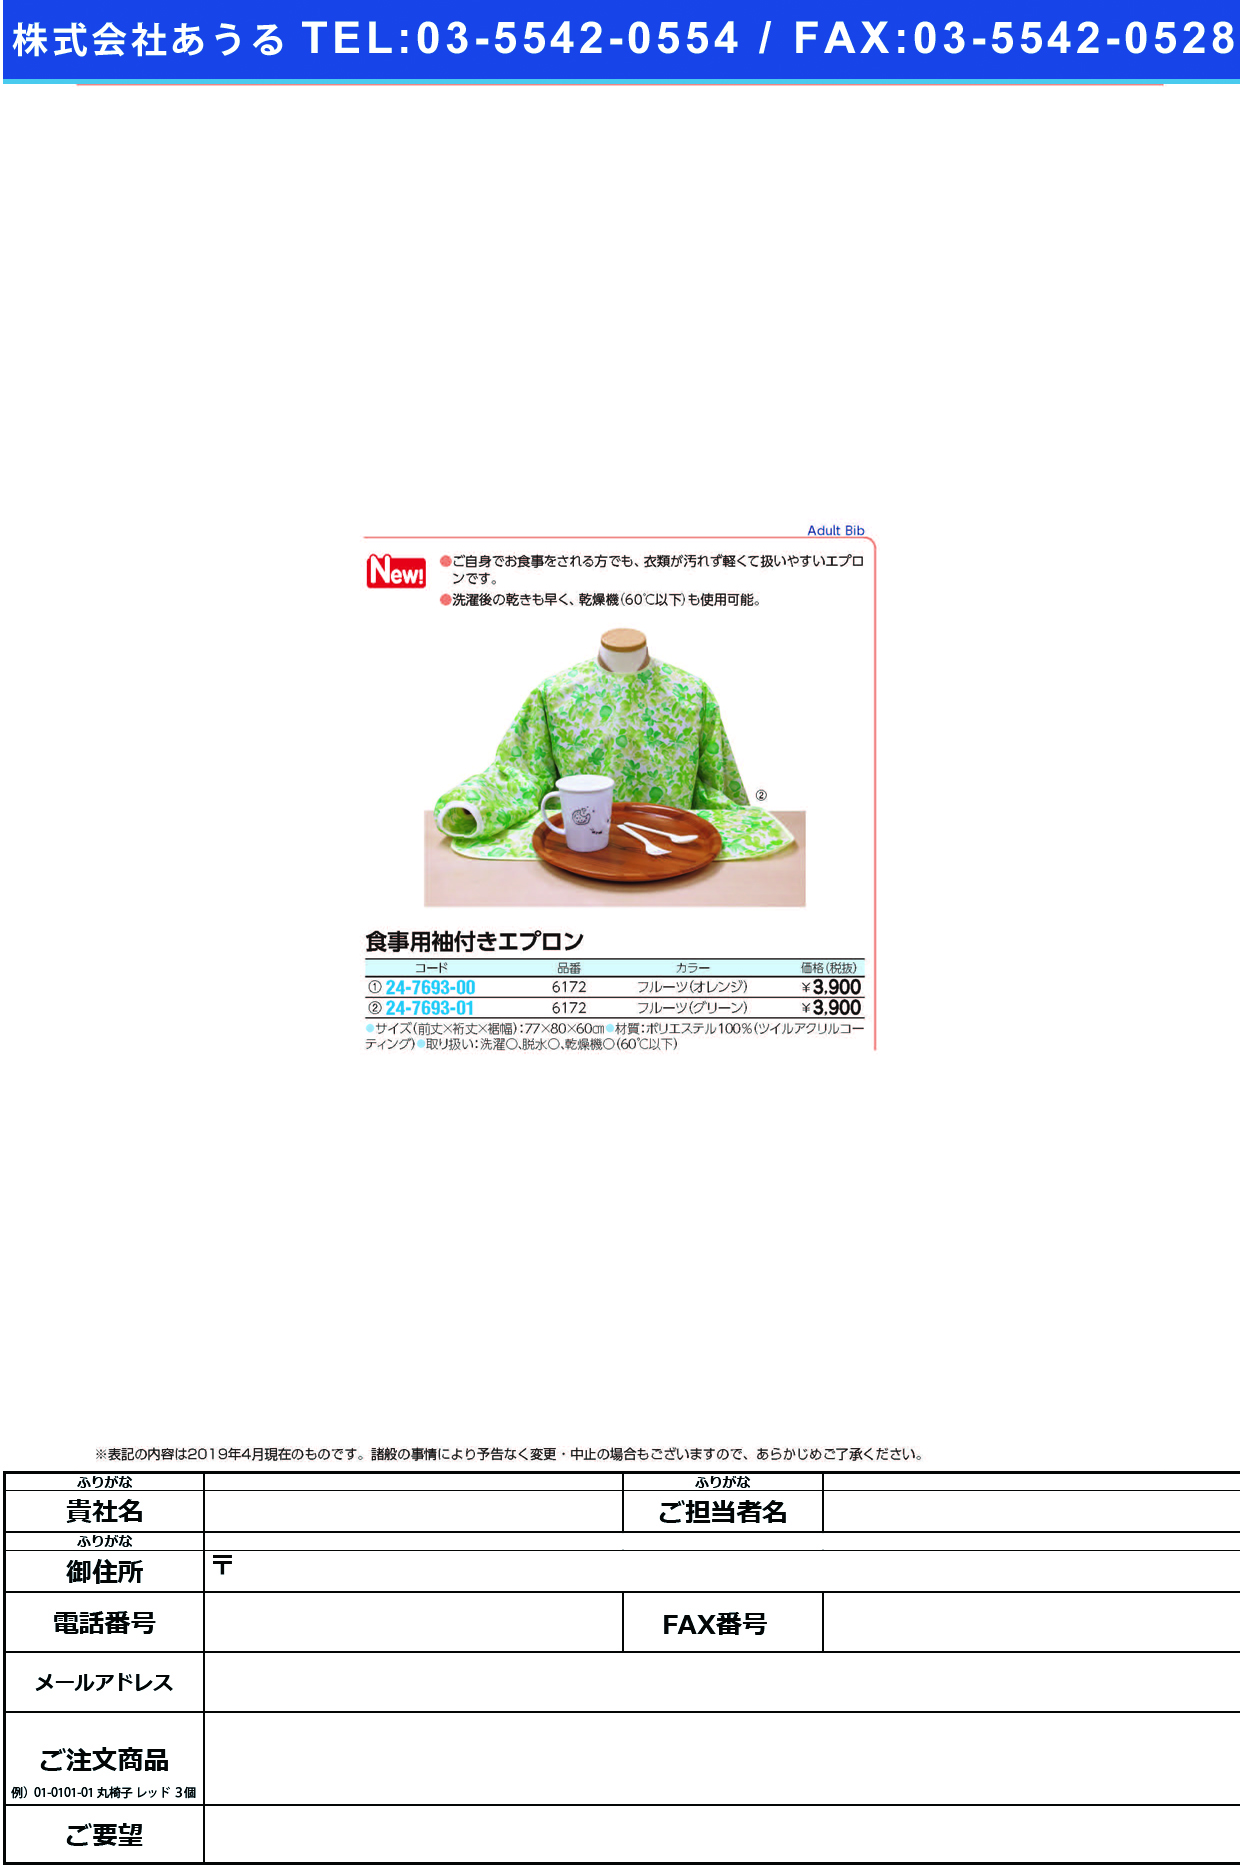 食事用袖付きエプロン6172(ﾌﾙｰﾂ ｸﾞﾘｰﾝ) ｼｮｸｼﾞﾖｳｿﾃﾞﾂｷｴﾌﾟﾛﾝ(日本エンゼル)